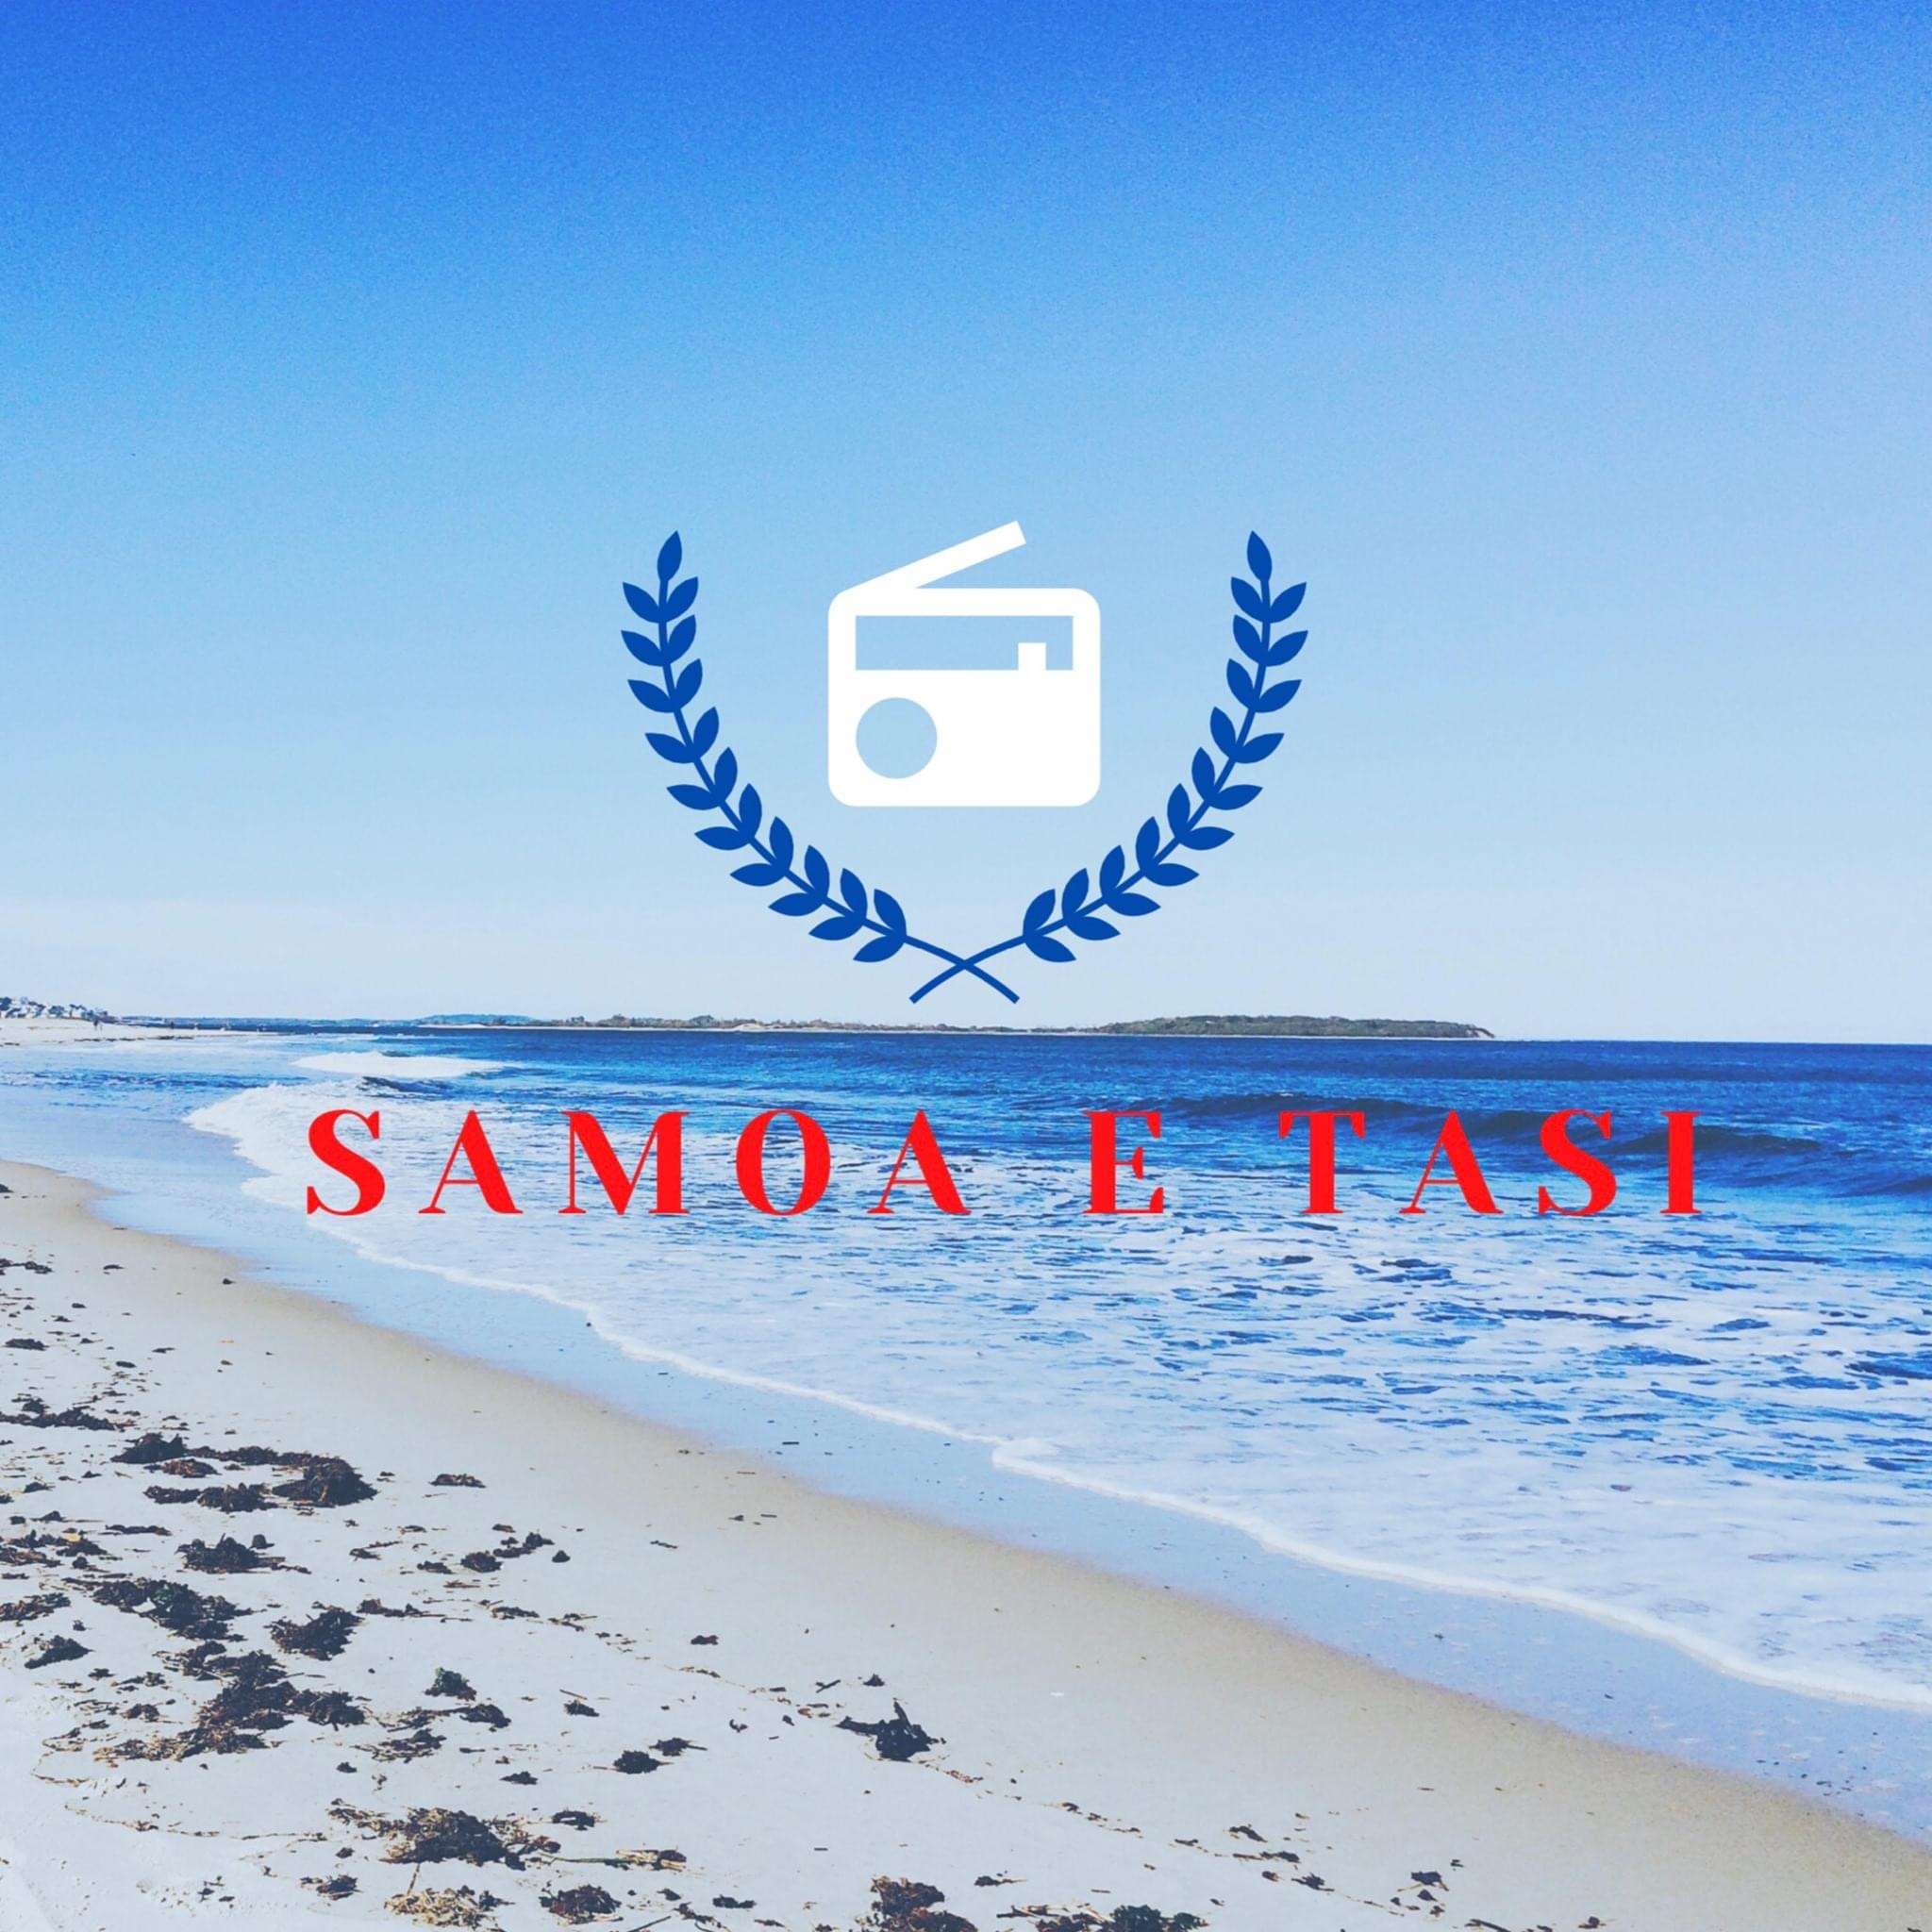 Samoa E Tasi / Sunday Samoan Breakfast - 2021-6-6